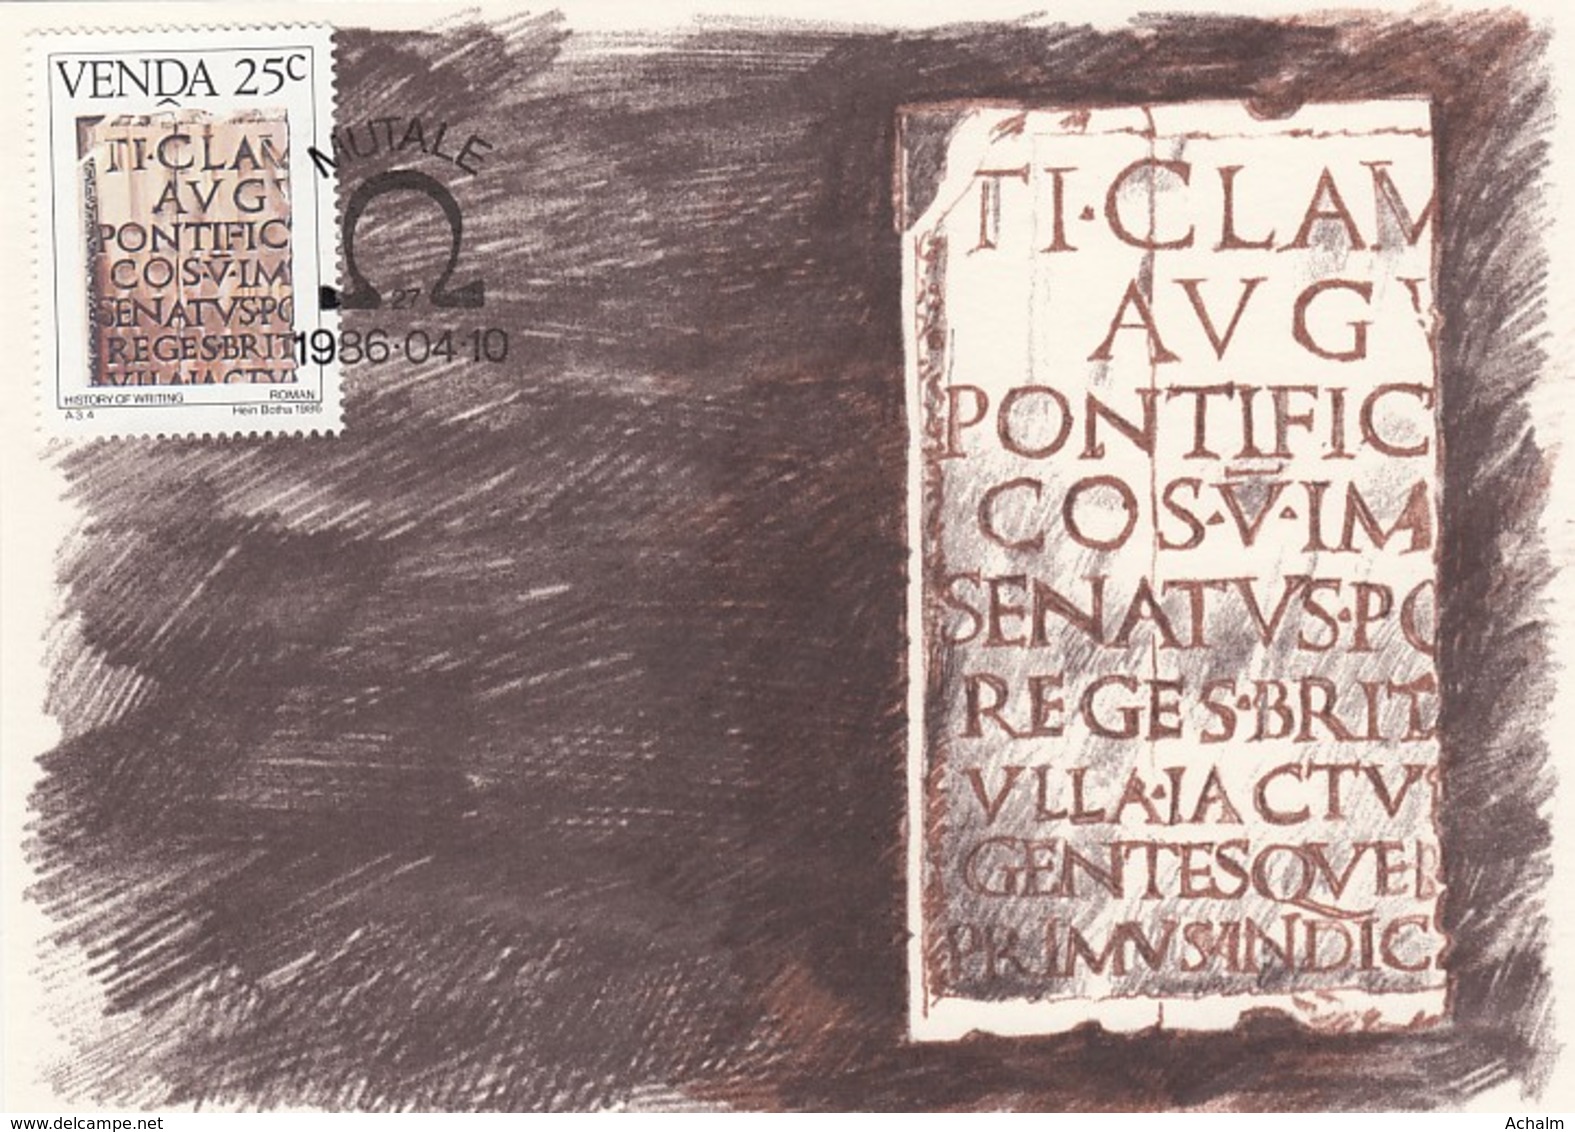 Venda - Maximum Card Of 1986 - MiNr. 140 - History Of The Writing - Roman Script - Venda